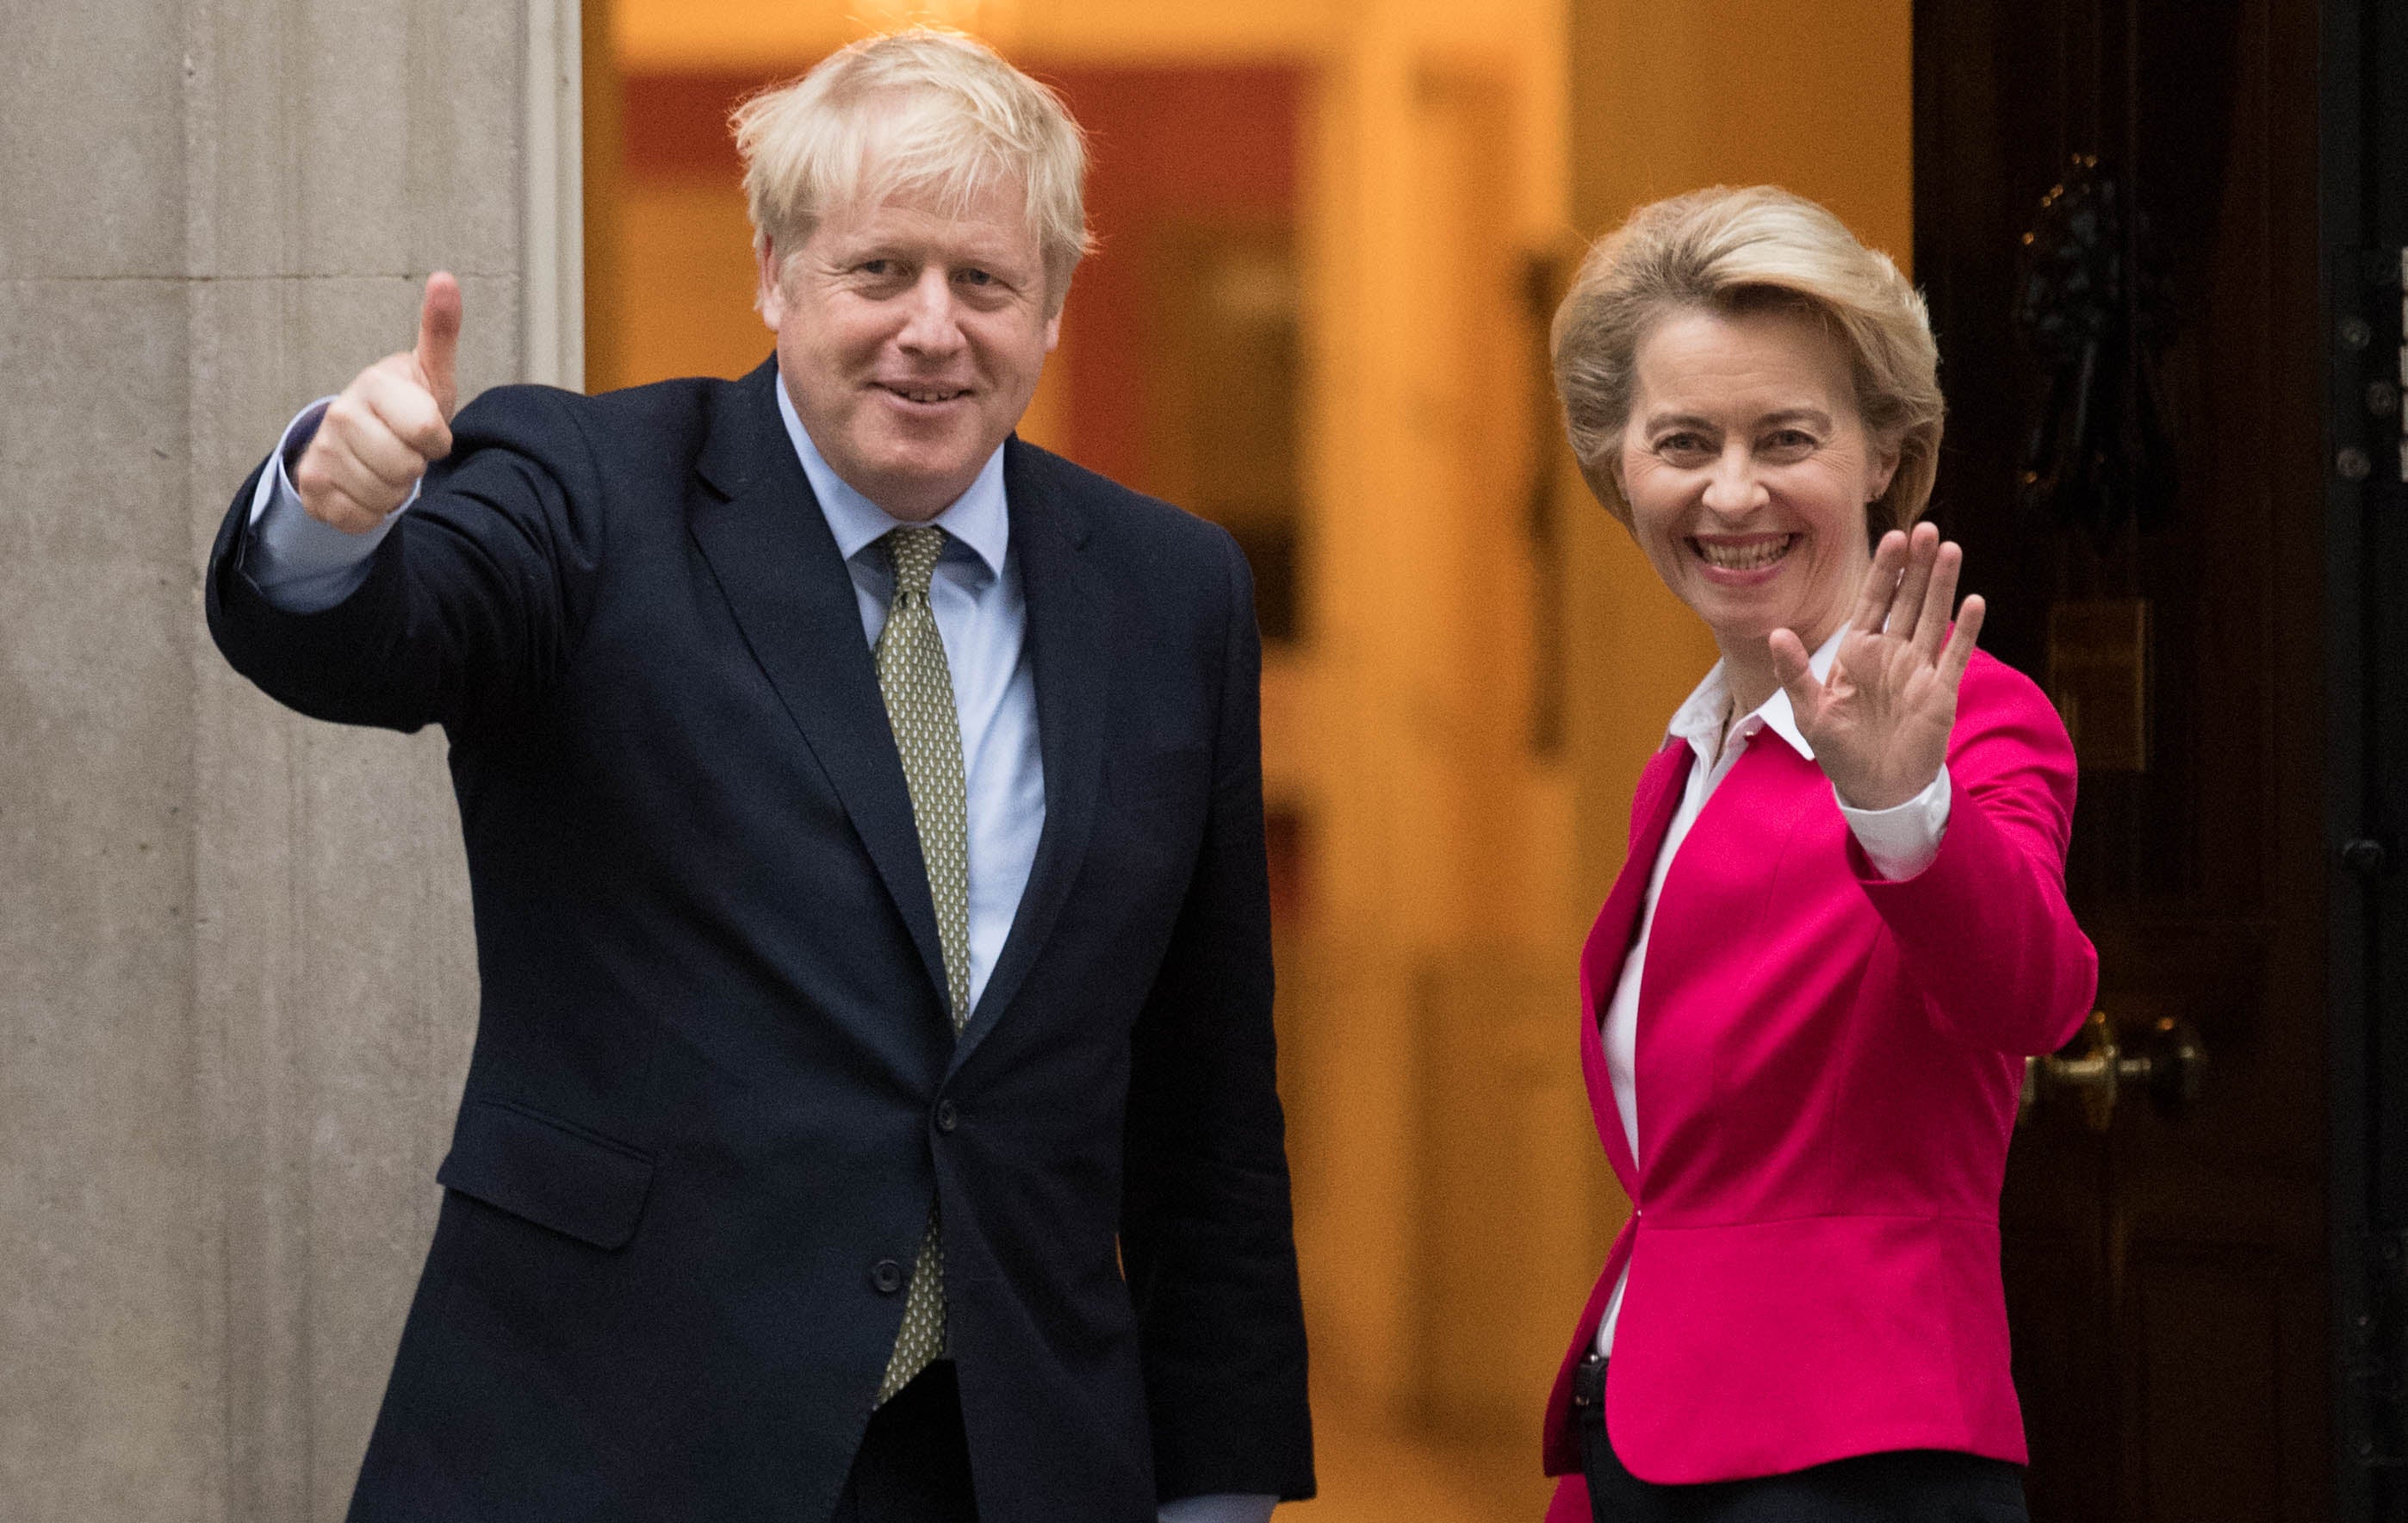 Boris Johnson and Ursula von der Leyen meet in January 2020